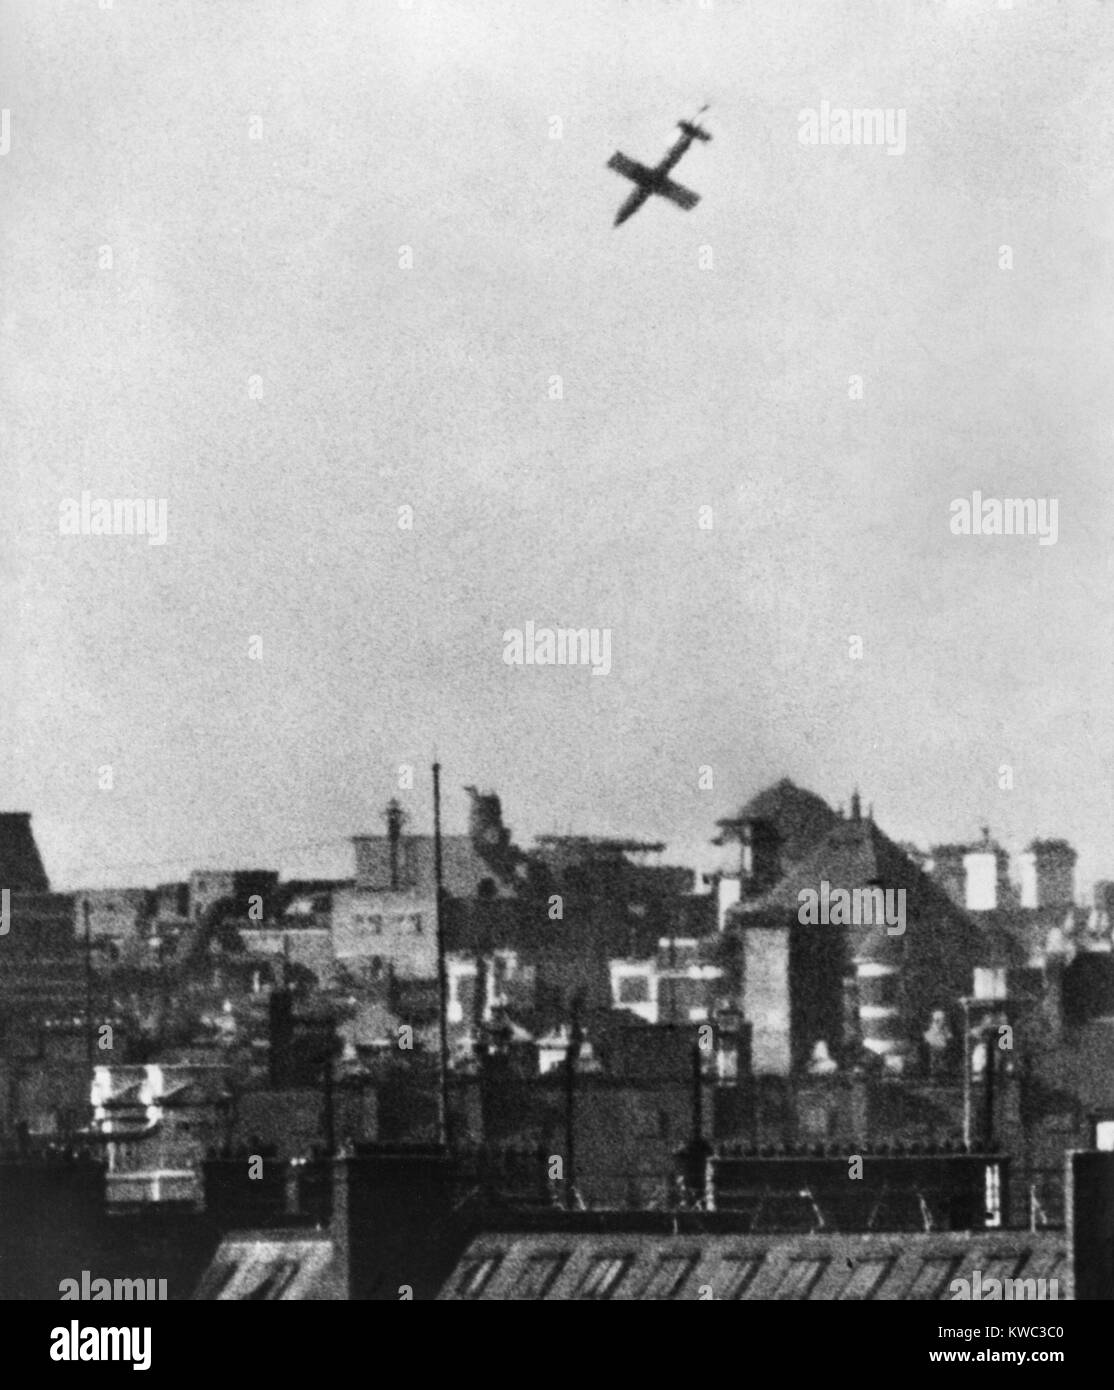 Robot allemand avion, V-1 Buzz bomb gouttes sur une ville dans le sud de l'Angleterre. 22 juin 1944, la Première Guerre mondiale (BSLOC 2  2015 13 37) Banque D'Images